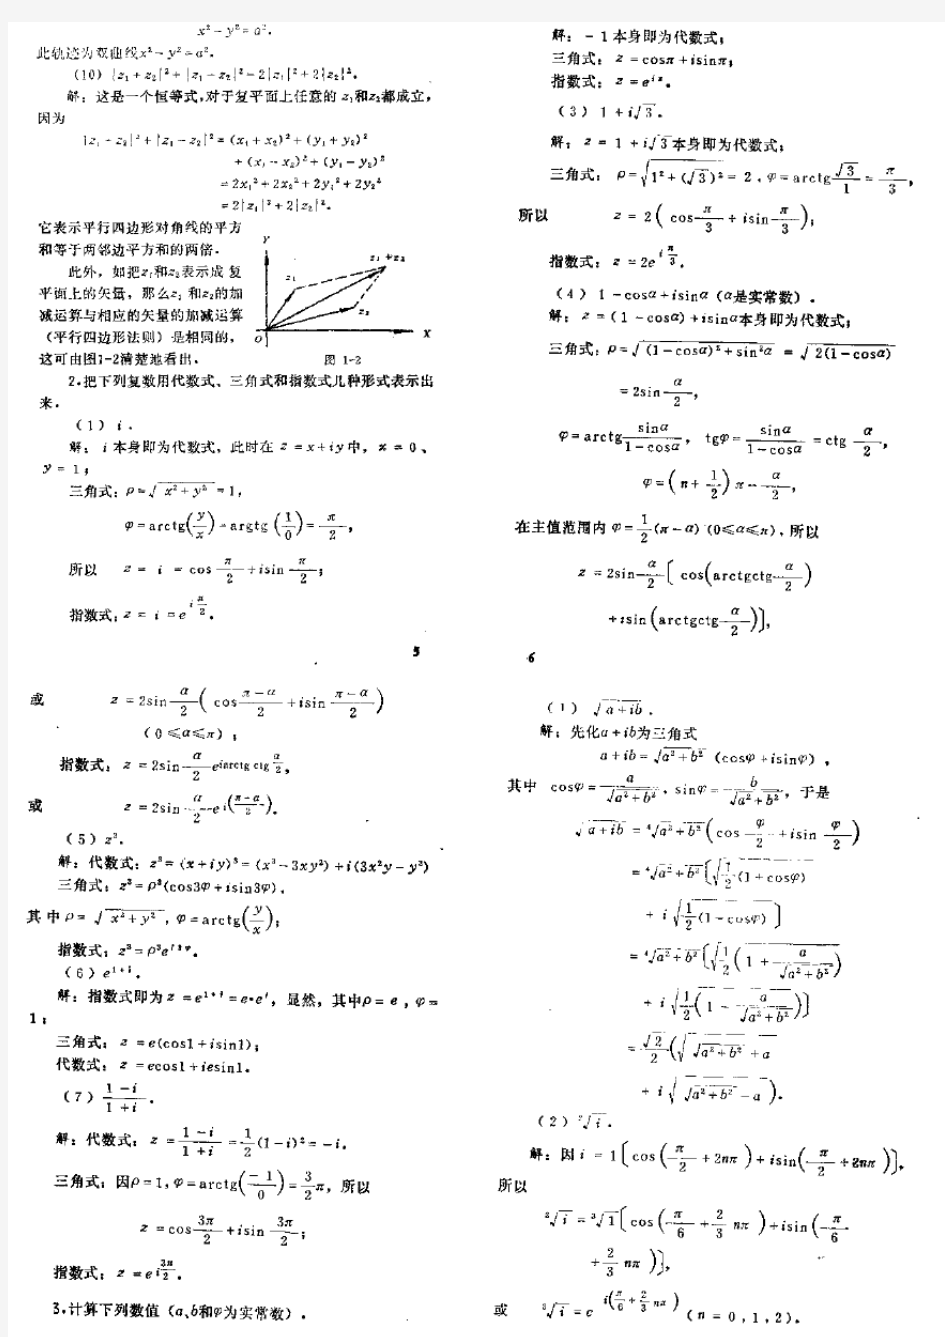 数学物理方法答案 梁昆淼编 (第四版)